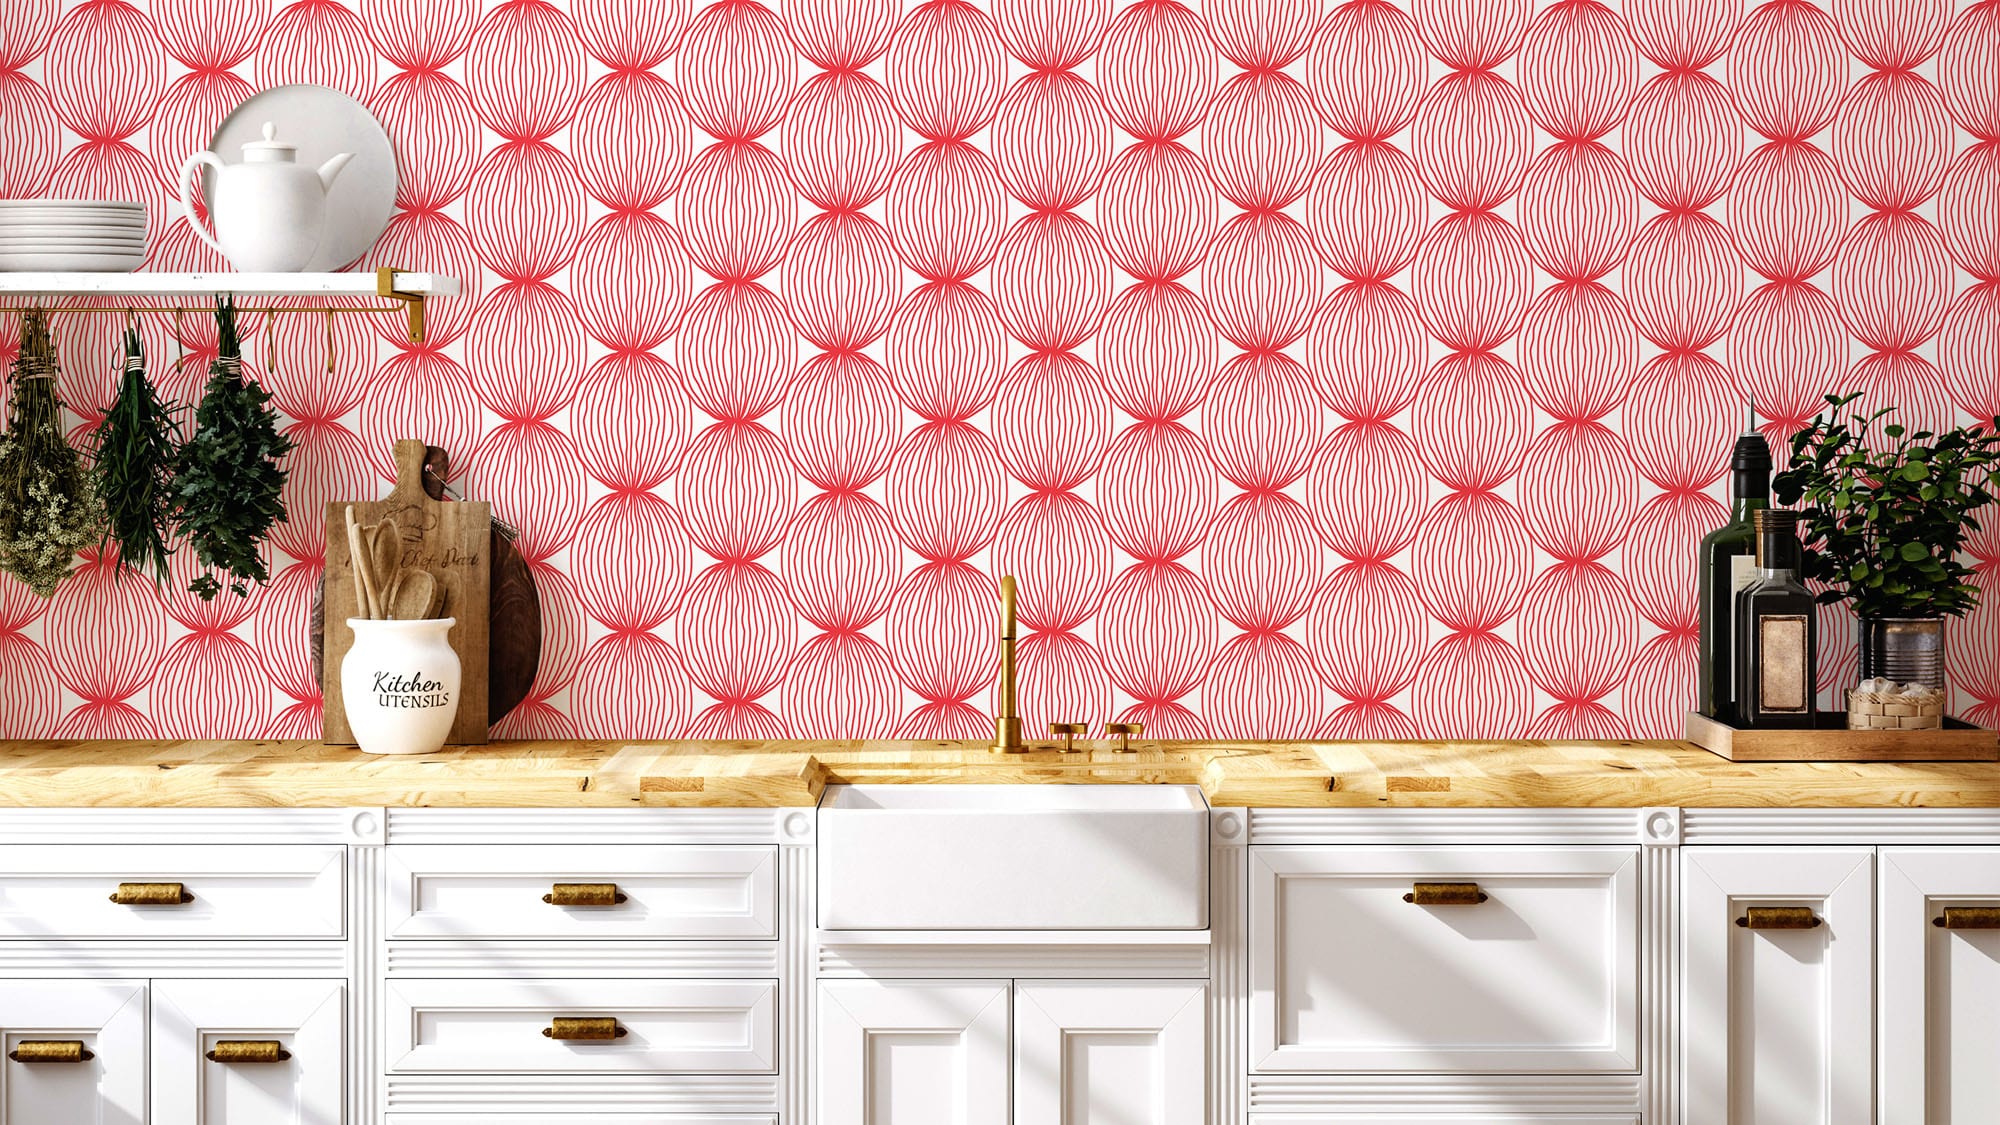 2-3pack 3D Marble Tile Backsplash Wallpaper 12X12in for Kitchen Counter Top  DIY